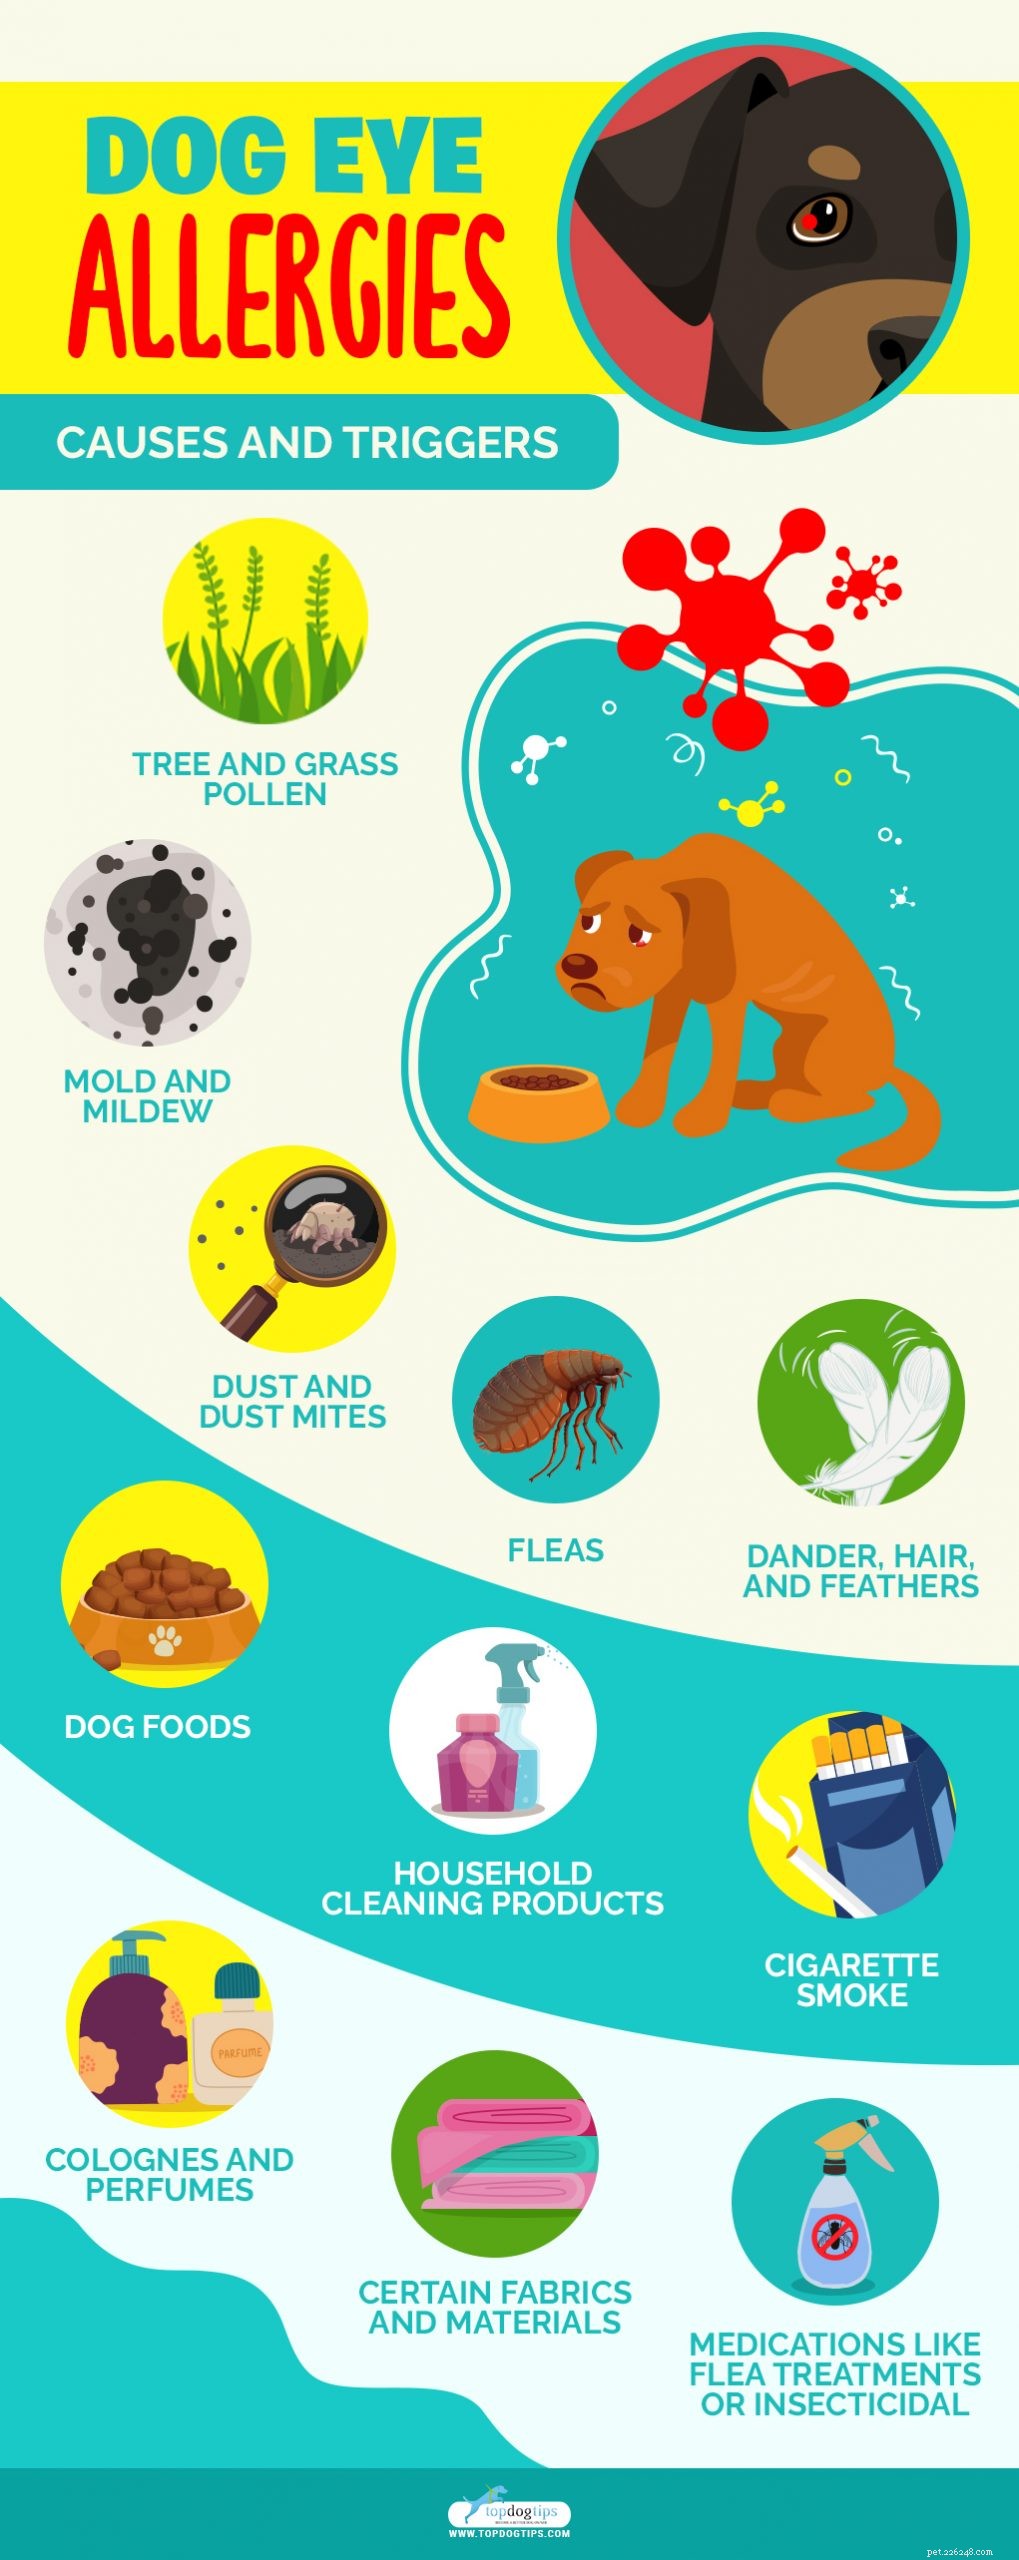 Allergies aux yeux du chien :symptômes, causes, remèdes